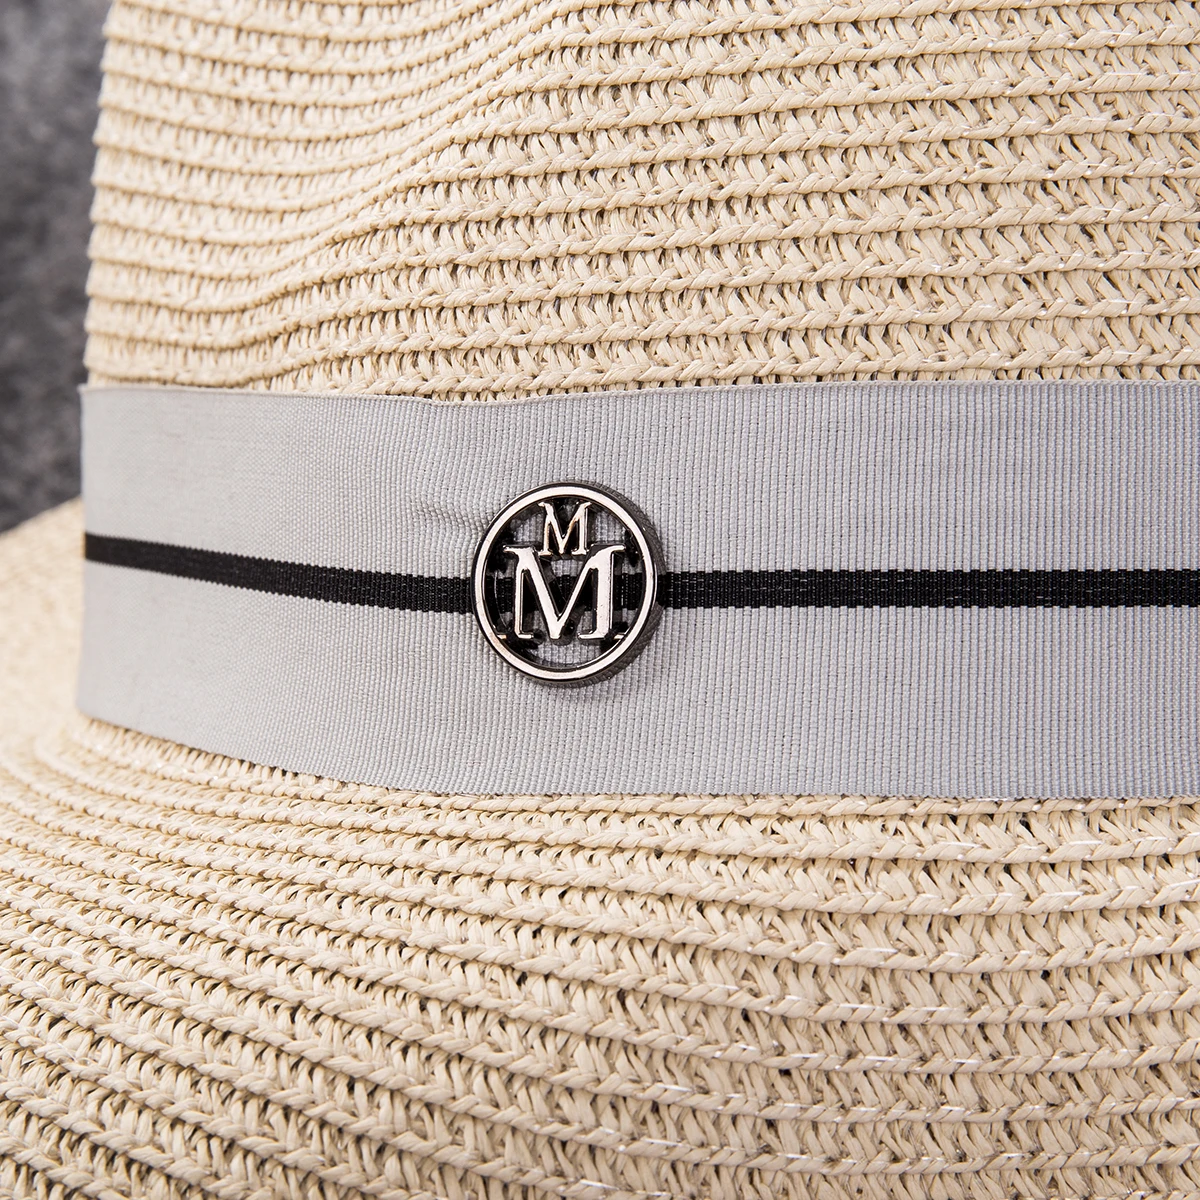 Панама шляпа летняя Солнцезащитная шляпа для женщин Мужская пляжная соломенная шляпа для мужчин Кепка для защиты от ультрафиолета femme ковбойские широкие поля, из соломы Кепка